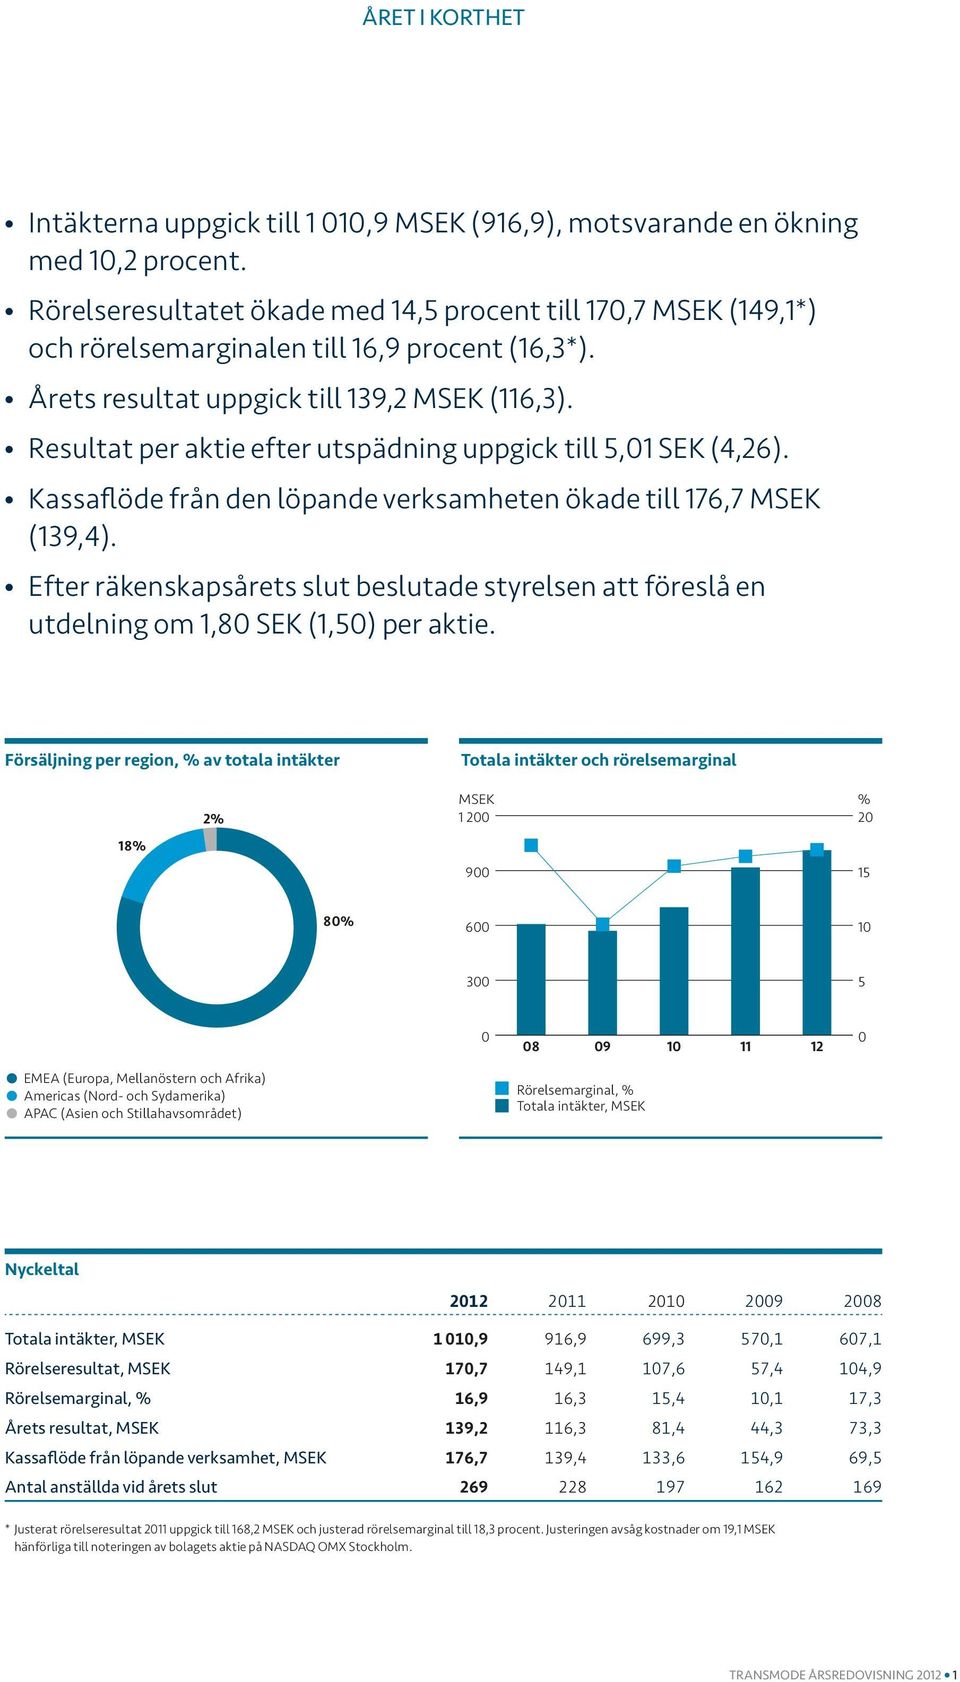 Resultat per aktie efter utspädning uppgick till 5,01 SEK (4,26). Kassaflöde från den löpande verksamheten ökade till 176,7 MSEK (139,4).